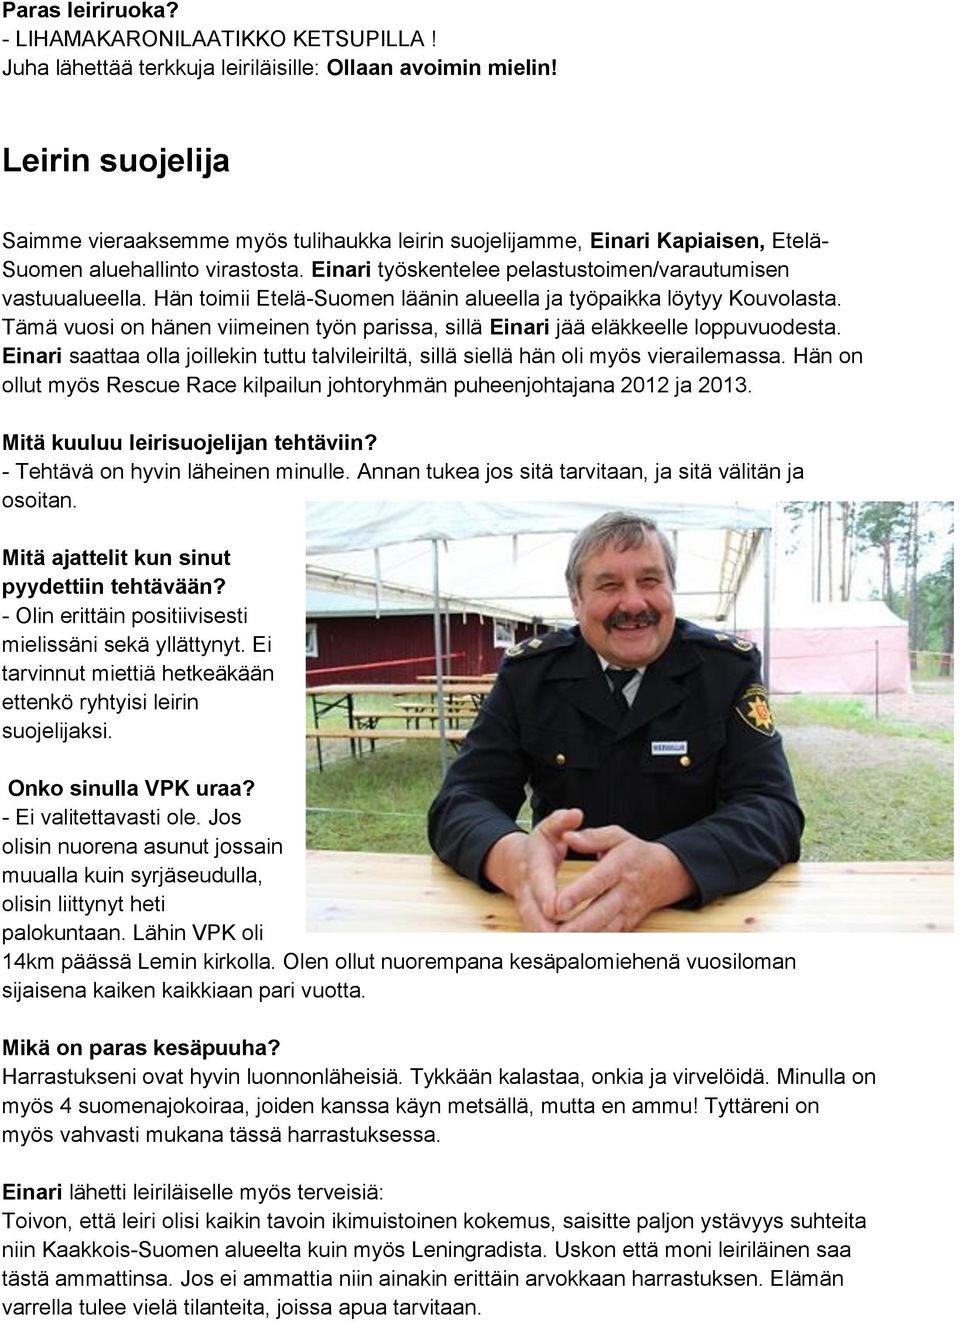 Hän toimii Etelä-Suomen läänin alueella ja työpaikka löytyy Kouvolasta. Tämä vuosi on hänen viimeinen työn parissa, sillä Einari jää eläkkeelle loppuvuodesta.